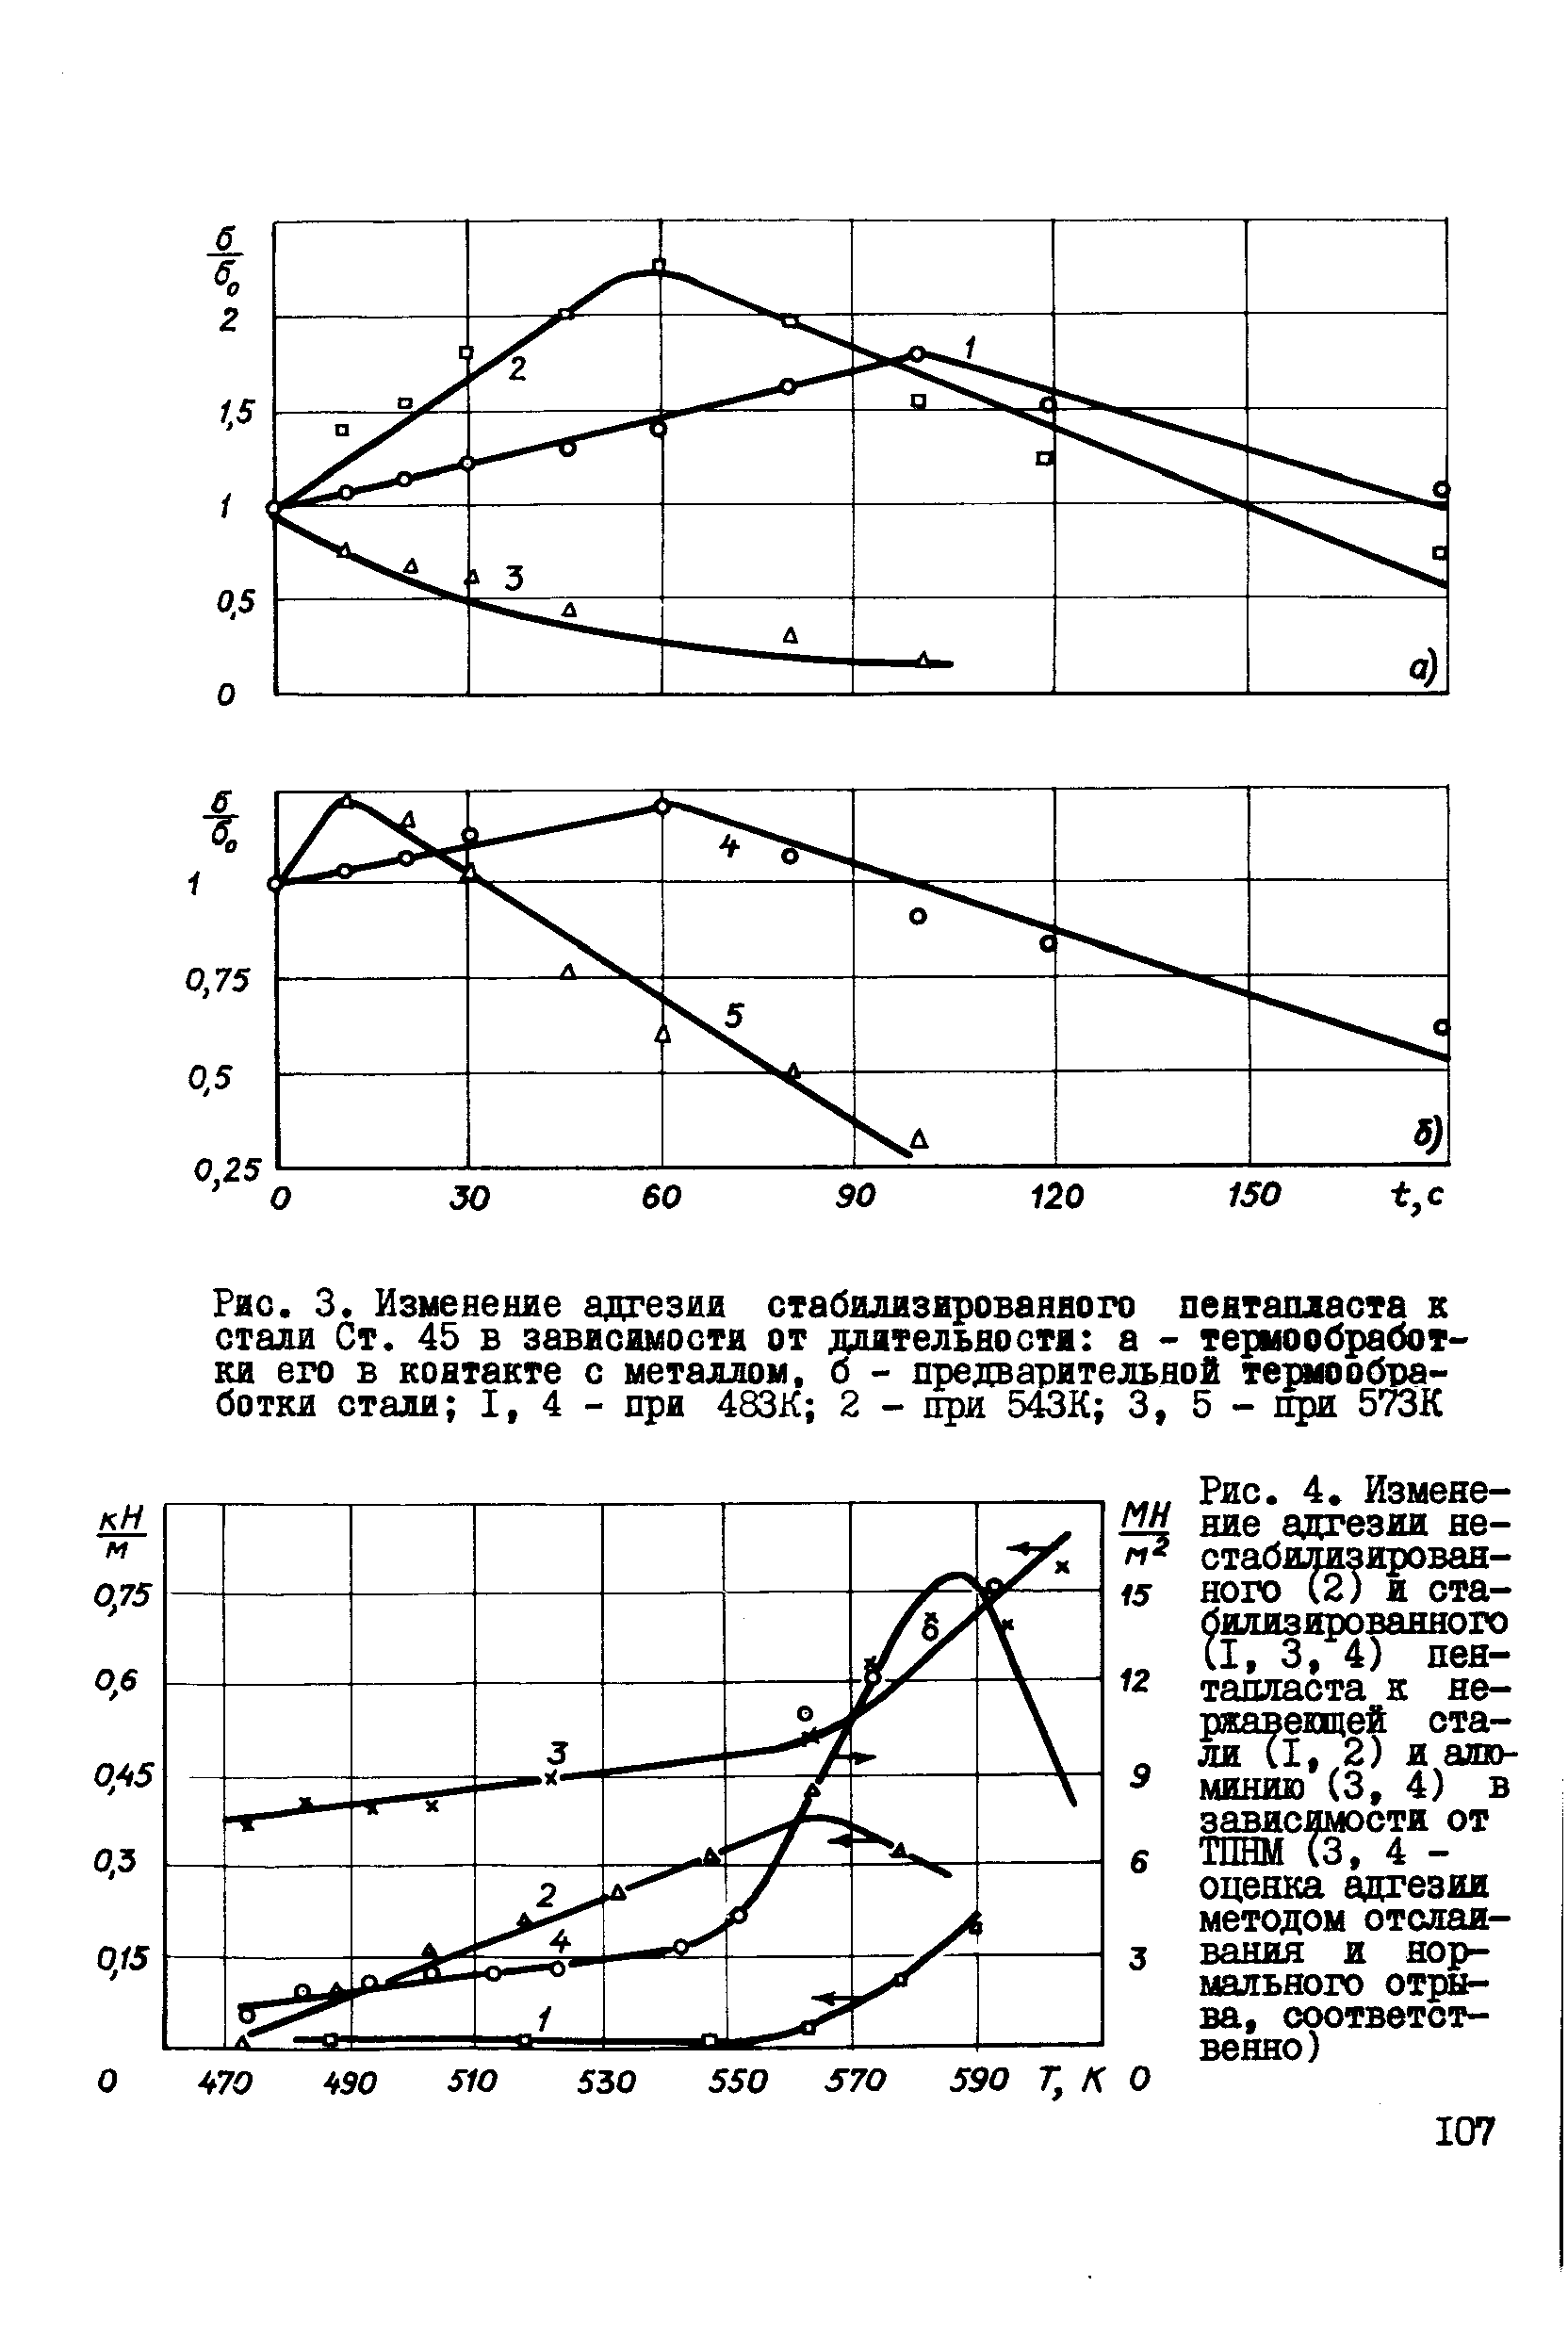 Рис. 4, Изменение адгезии не-стабарзирован-ного (2) и стабилизированного С1, 3,4) пентапласта к не-ржавещей стали (I, 2) и алк>-минию (3, 4) в зависимости от ТШШ (3, 4 -оценка адгезии методом отслаивания и нормального отрн ва, соответственно)
